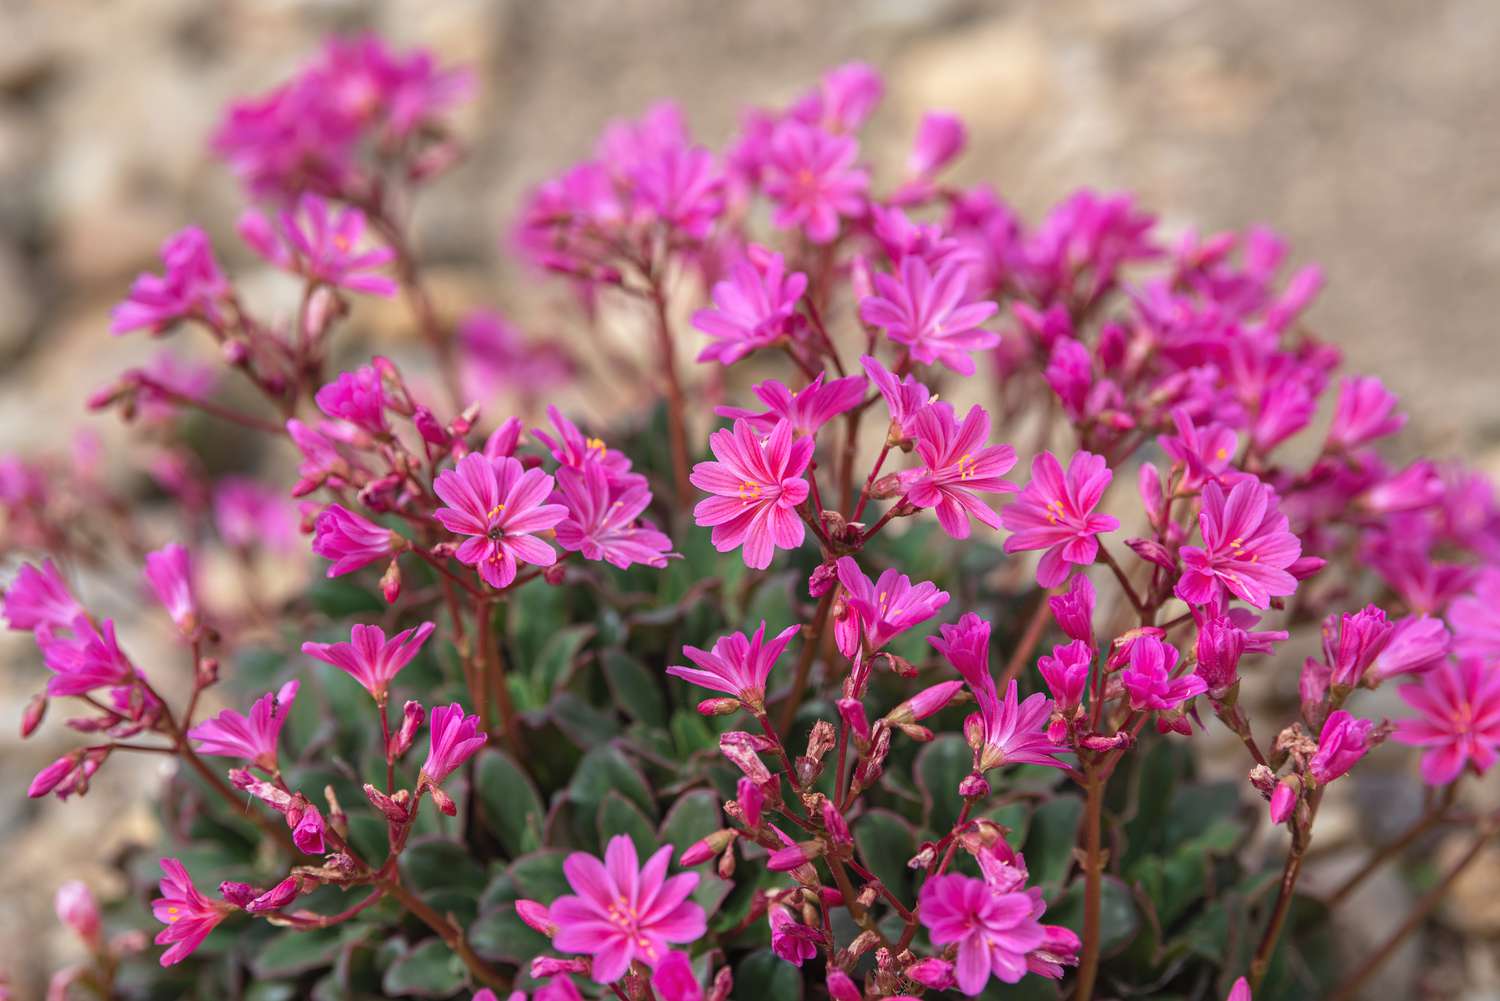 Regenbogen-Lewisia-Pflanze mit leuchtend rosa Blüten an dünnen Stielen in Nahaufnahme